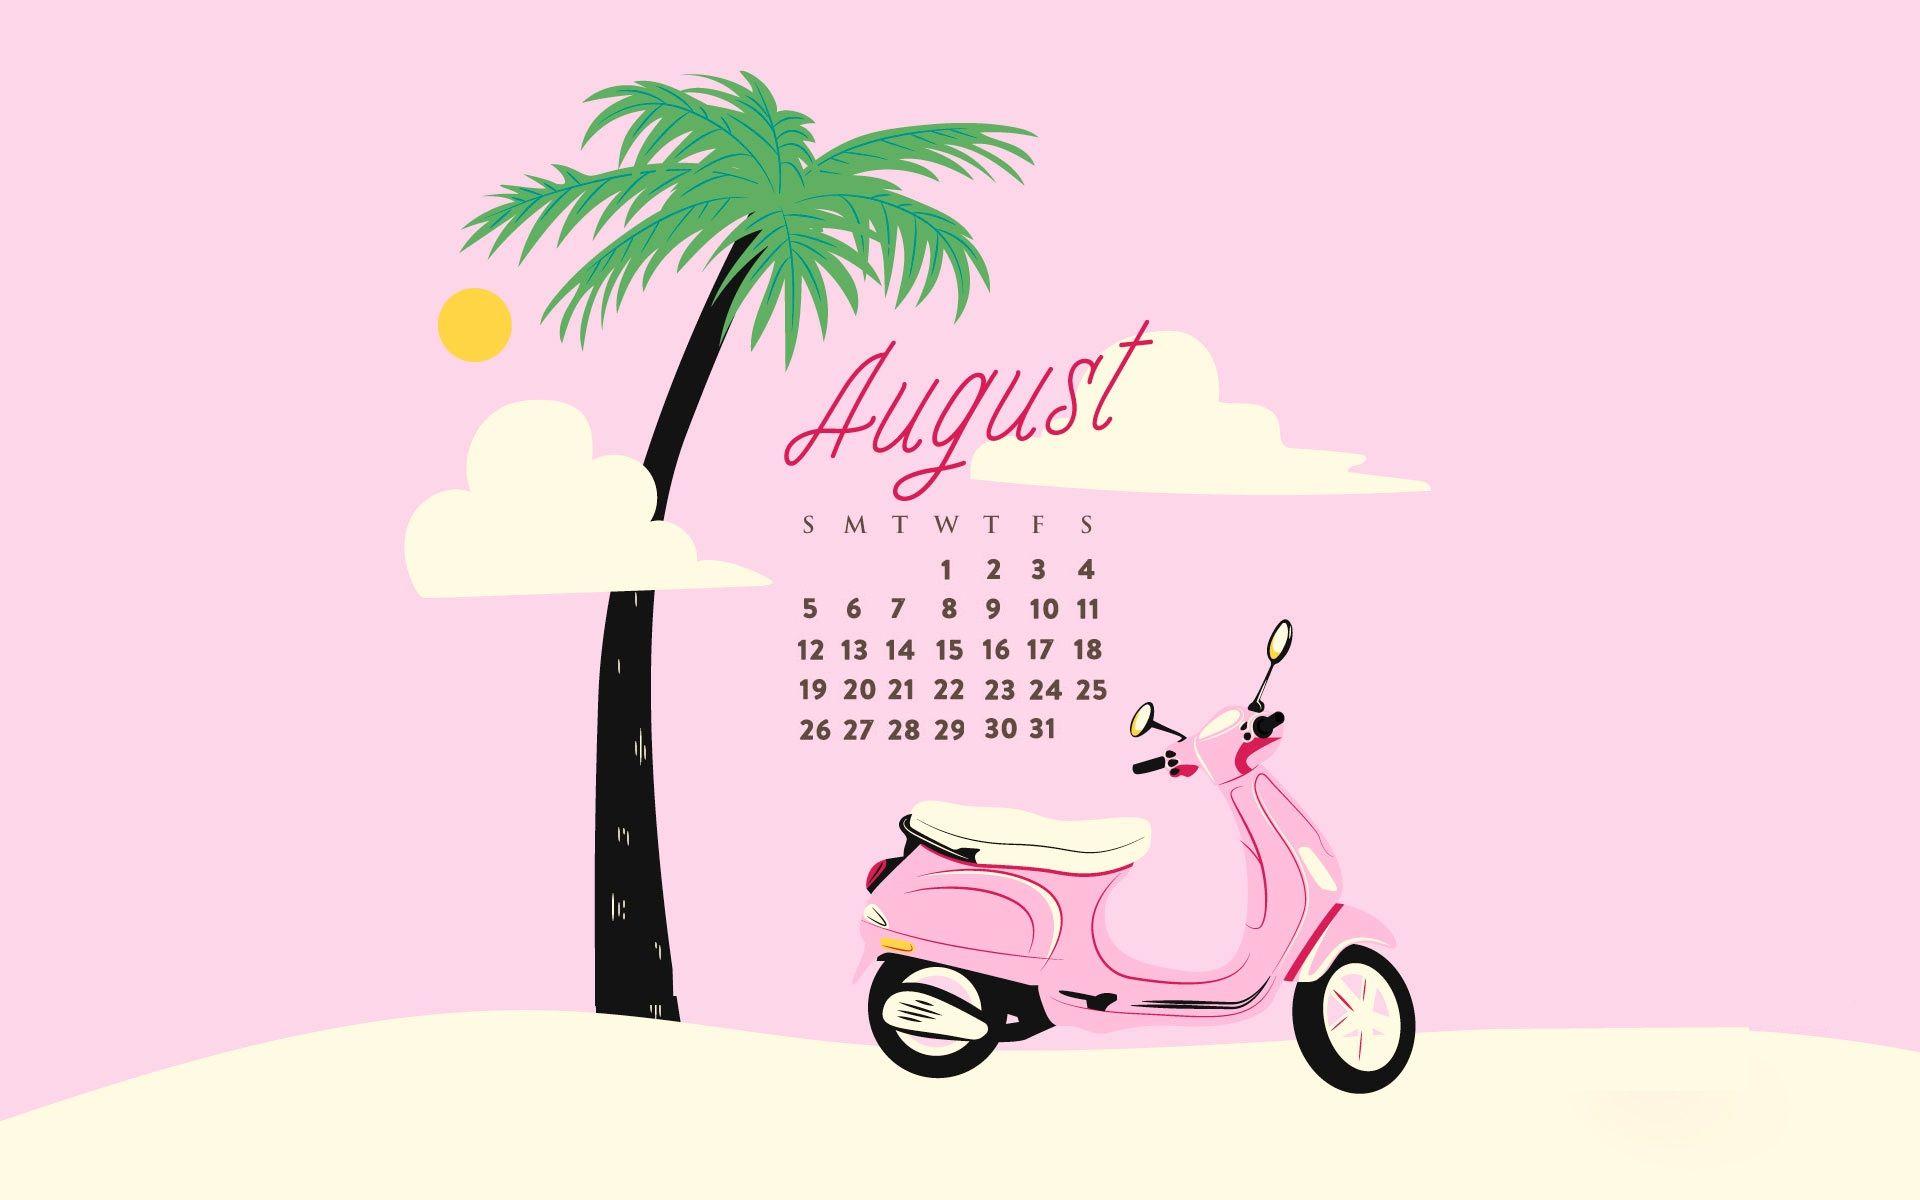 August 2018 Calendar Wallpaper. Calendar 2018